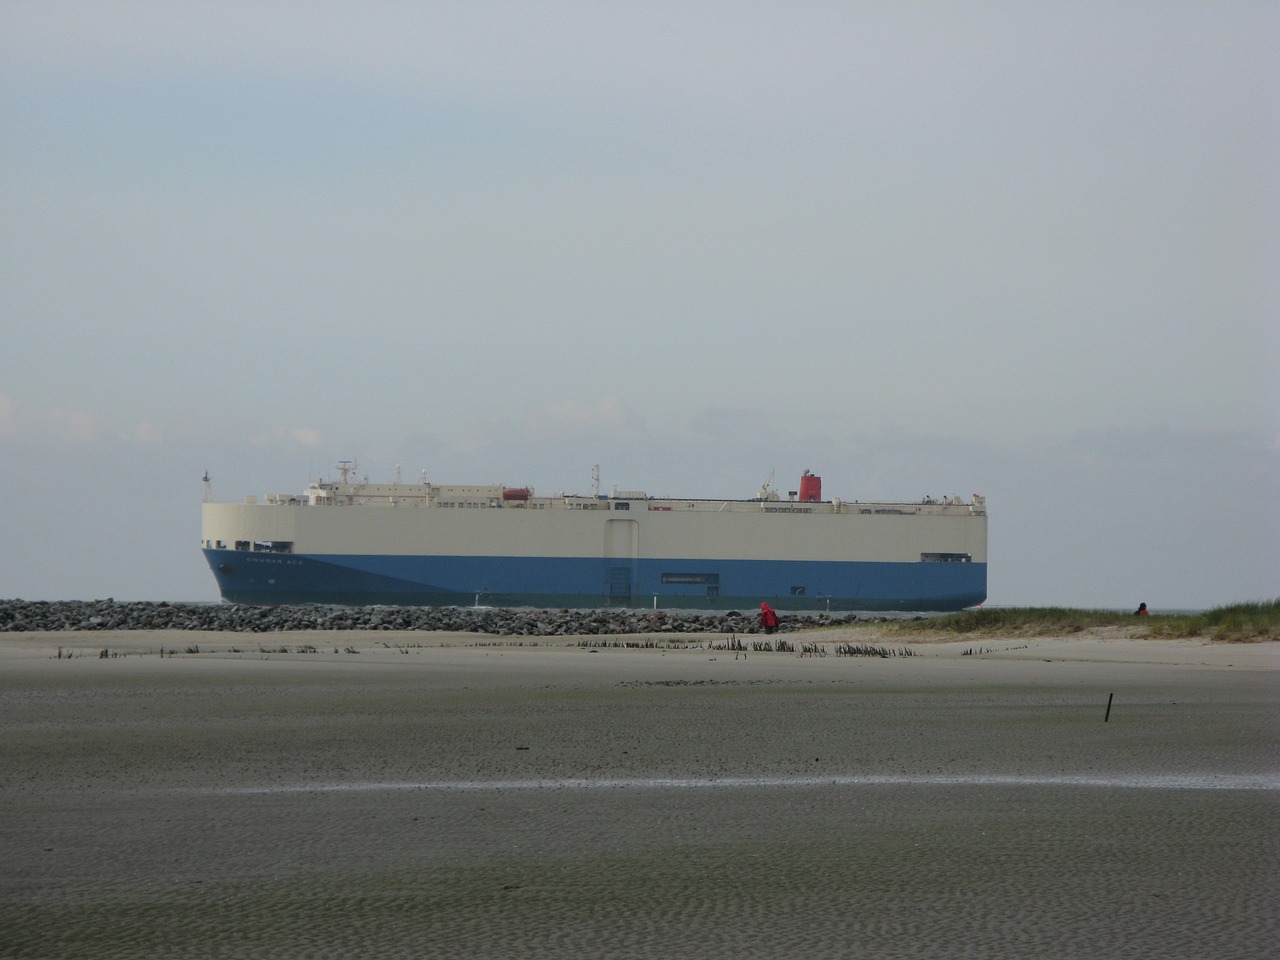 borkum freighter beach free photo